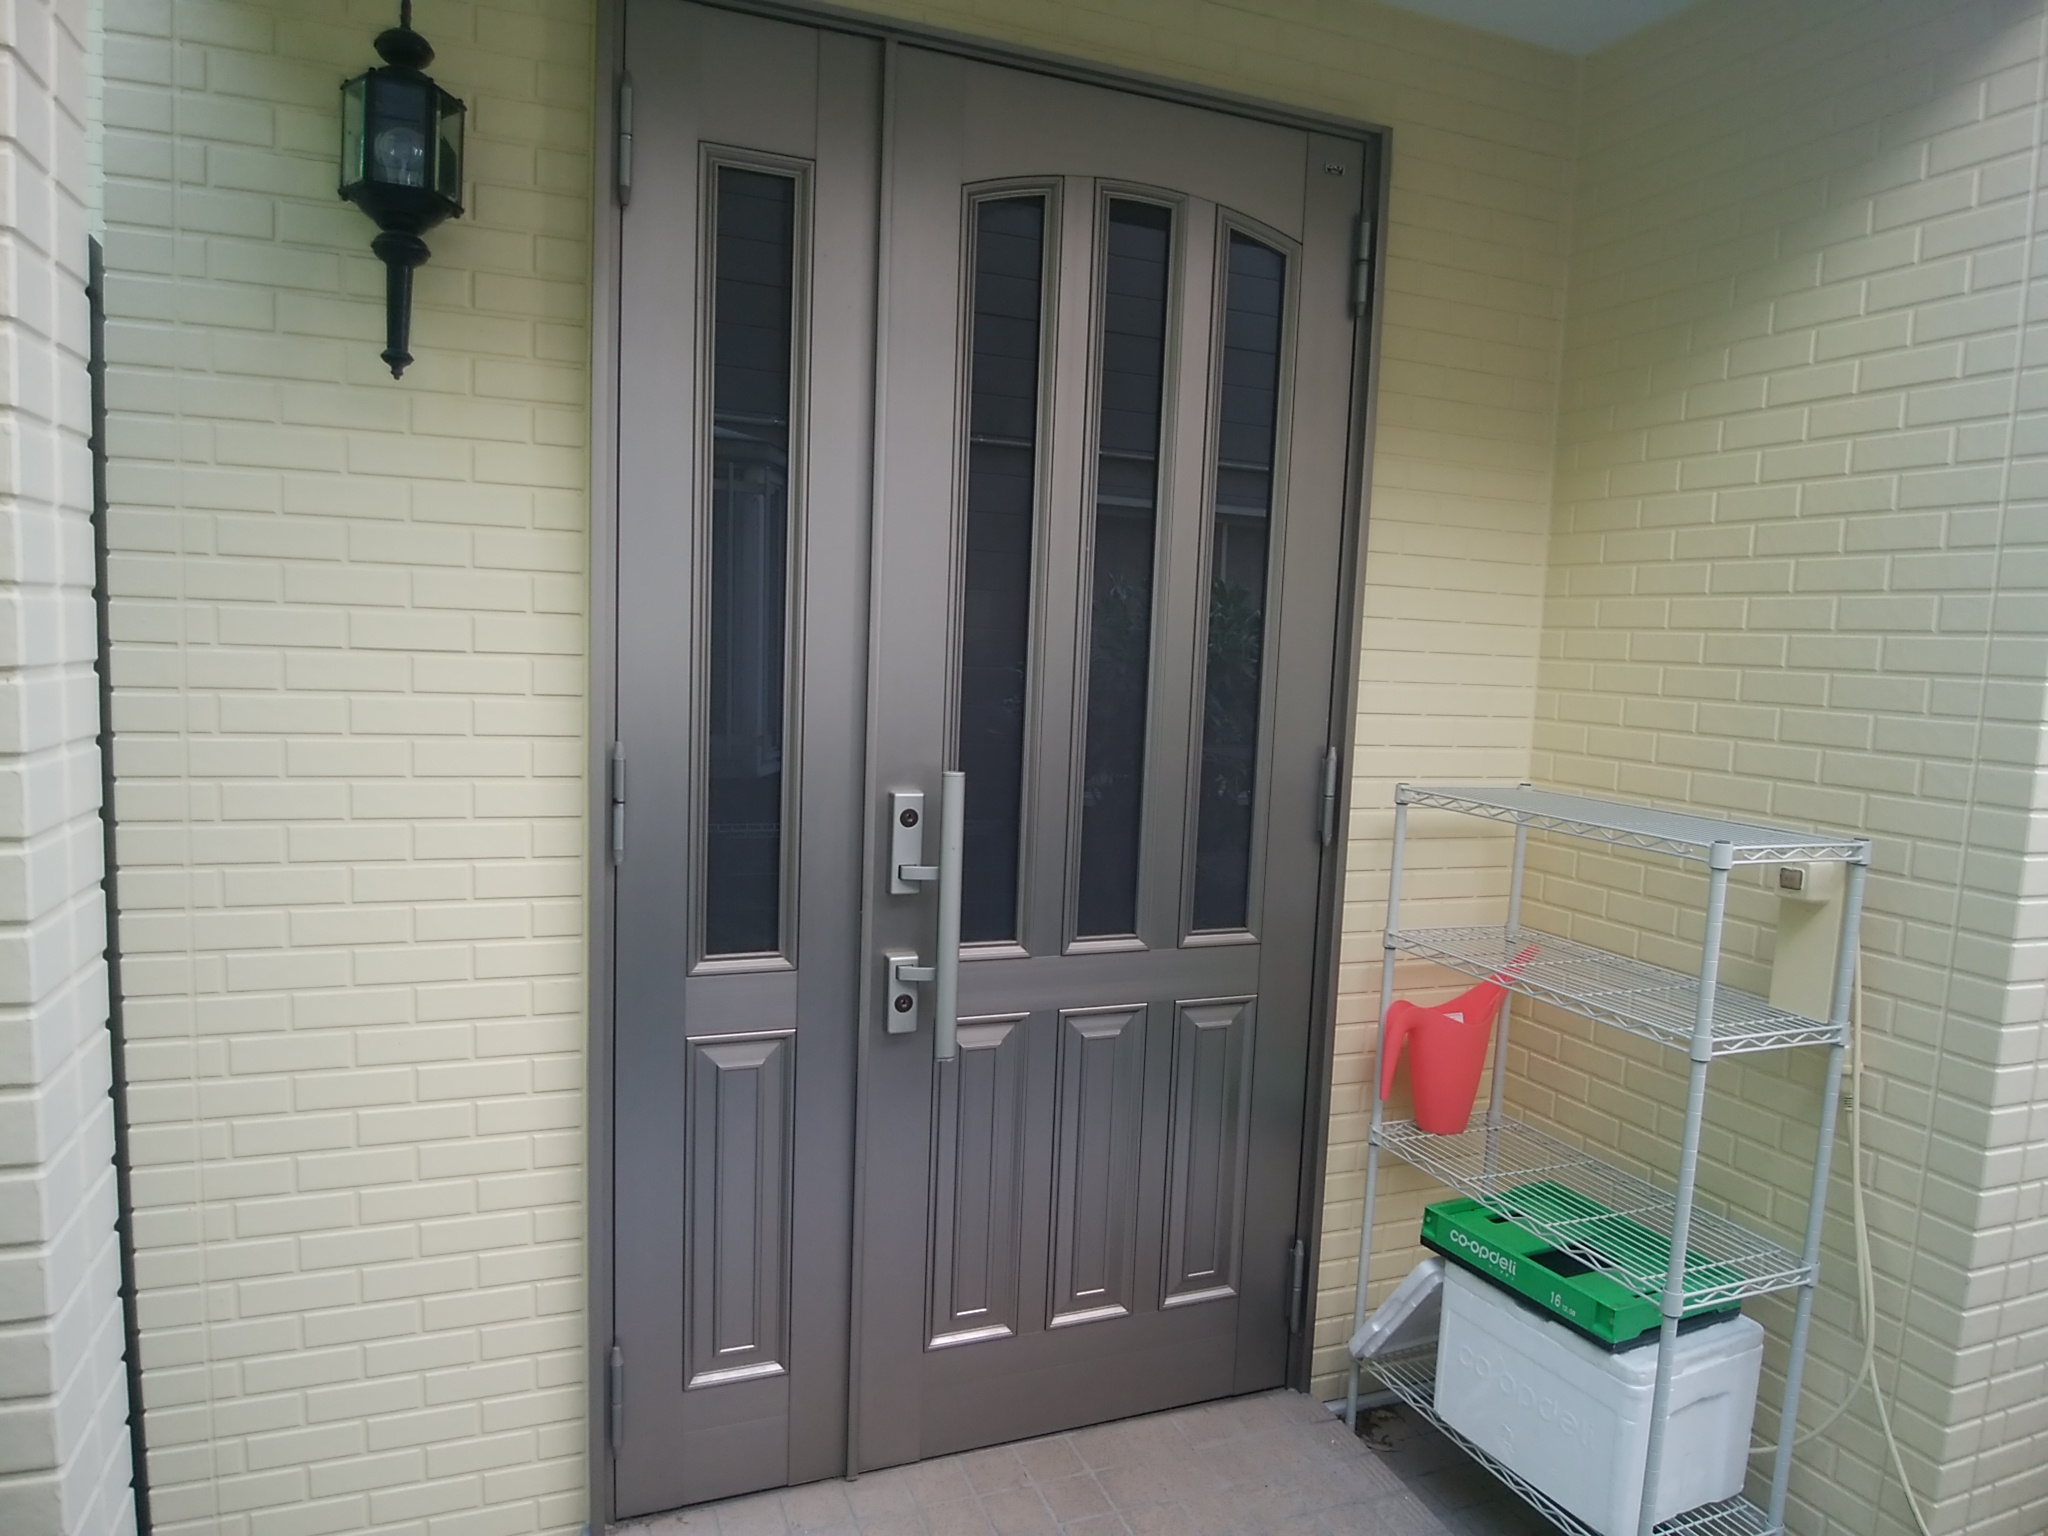 Ykkapドアリモw17v オートロックでしっかり防犯できるドアにしたい 千葉県市川市の工事事例 玄関ドアのリフォームなら玄関ドア マイスターへお任せください